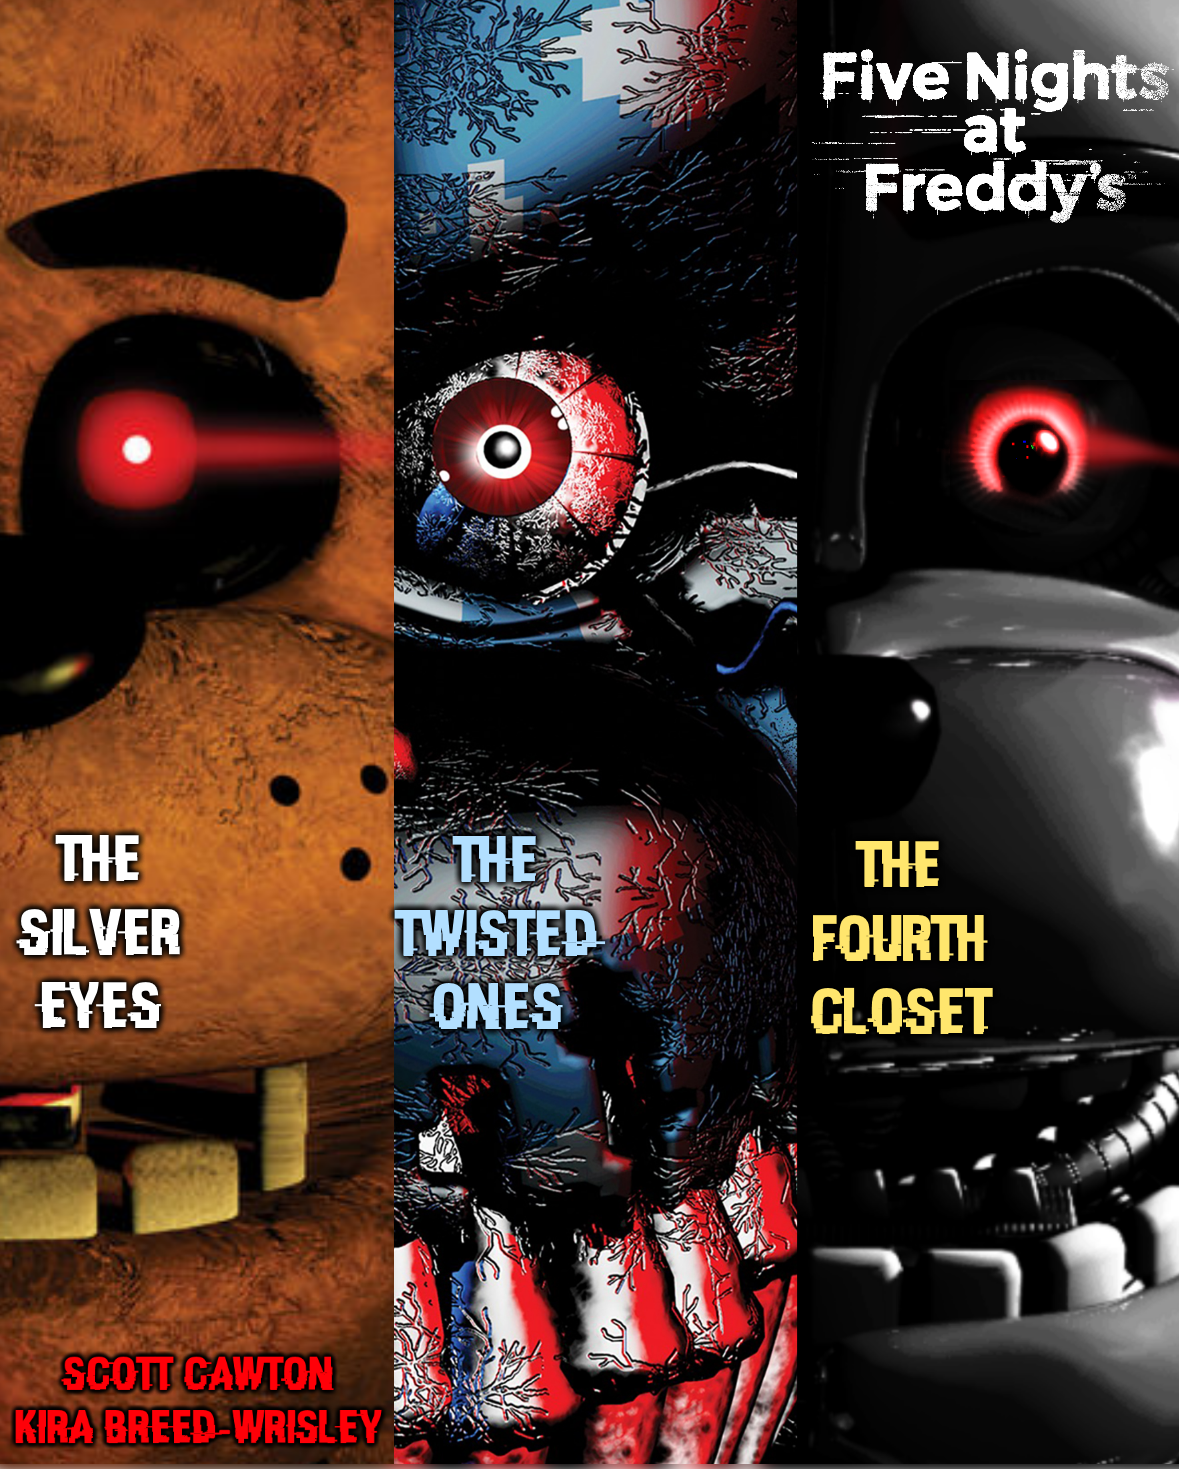 Книги по фнафу. Книга ФНАФ 9. Five Nights at Freddy's 2 книга. Книга Five Nights at Freddy s 4 шкаф. Five Nights at Freddy's Скотт Коутон четвертый шкаф.